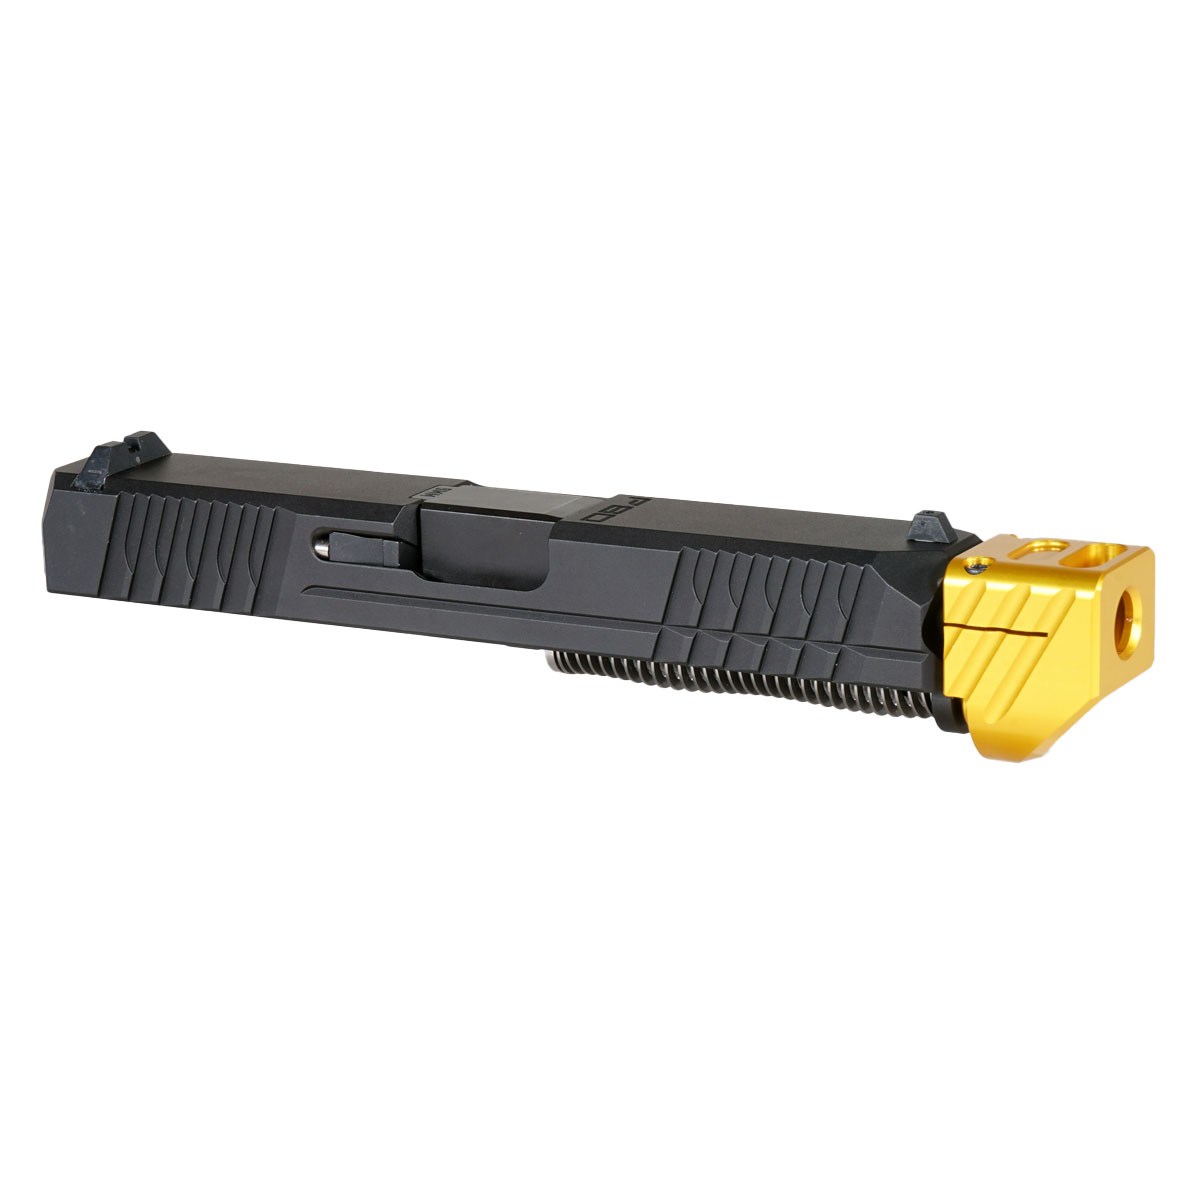 DTT 'Paracausal V2 w/ Gold Compensator' 9mm Complete Slide Kit - Glock 19 Gen 1-3 Compatible